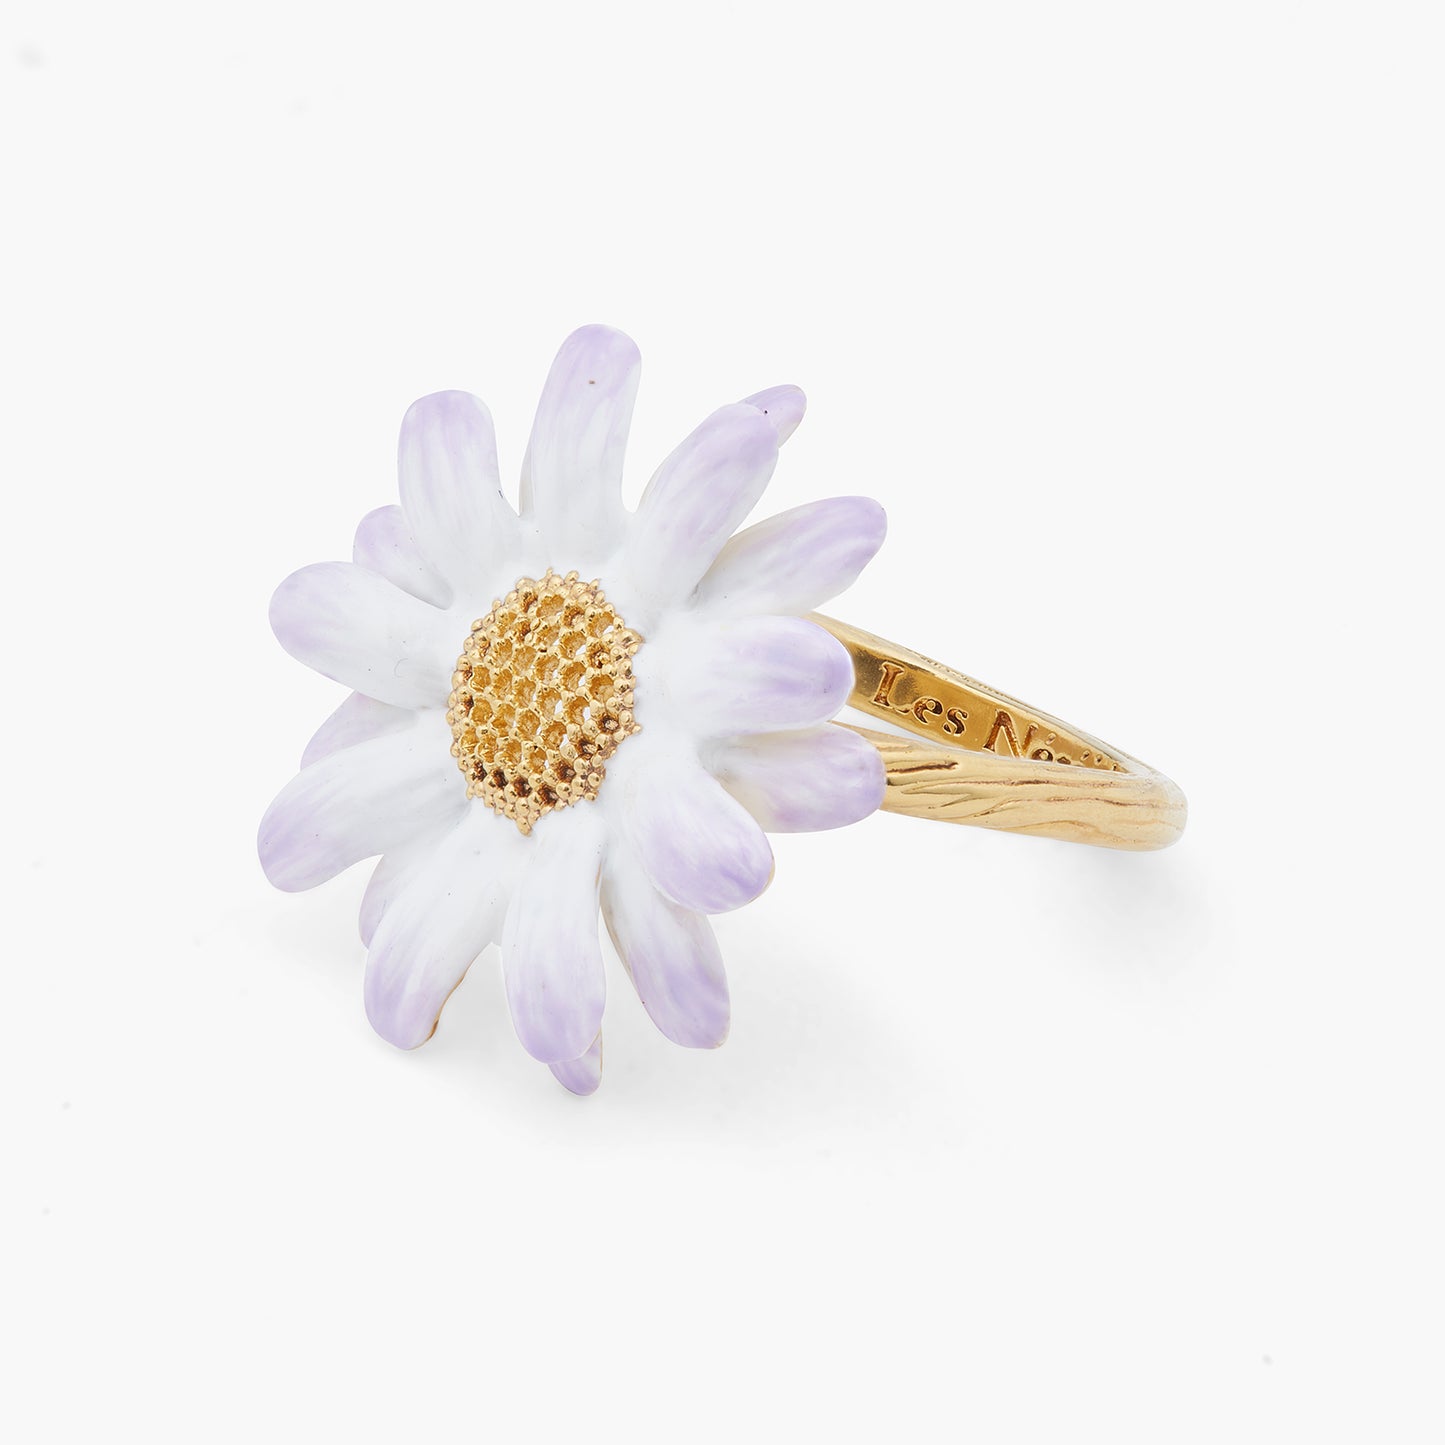 Aster Flower Fine Ring | ARLA6011